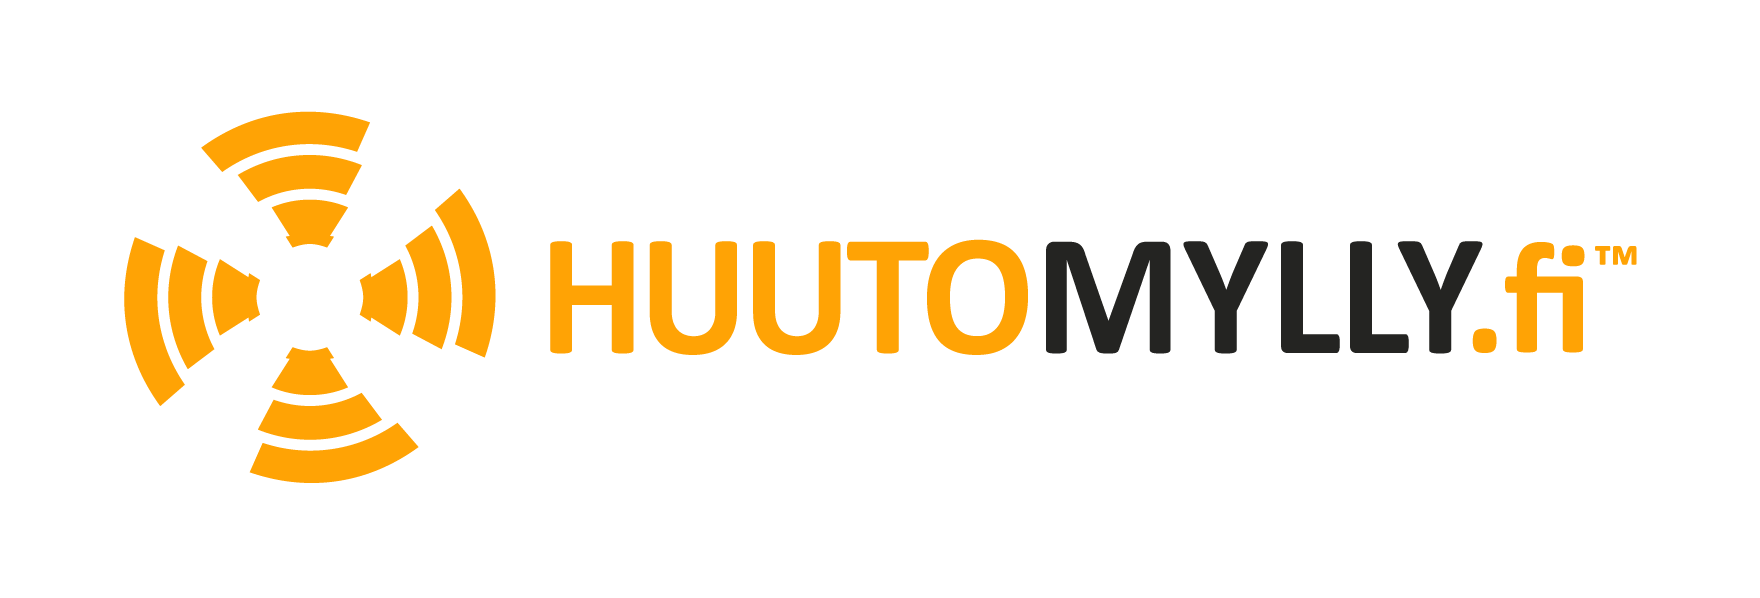 Huutomylly logo